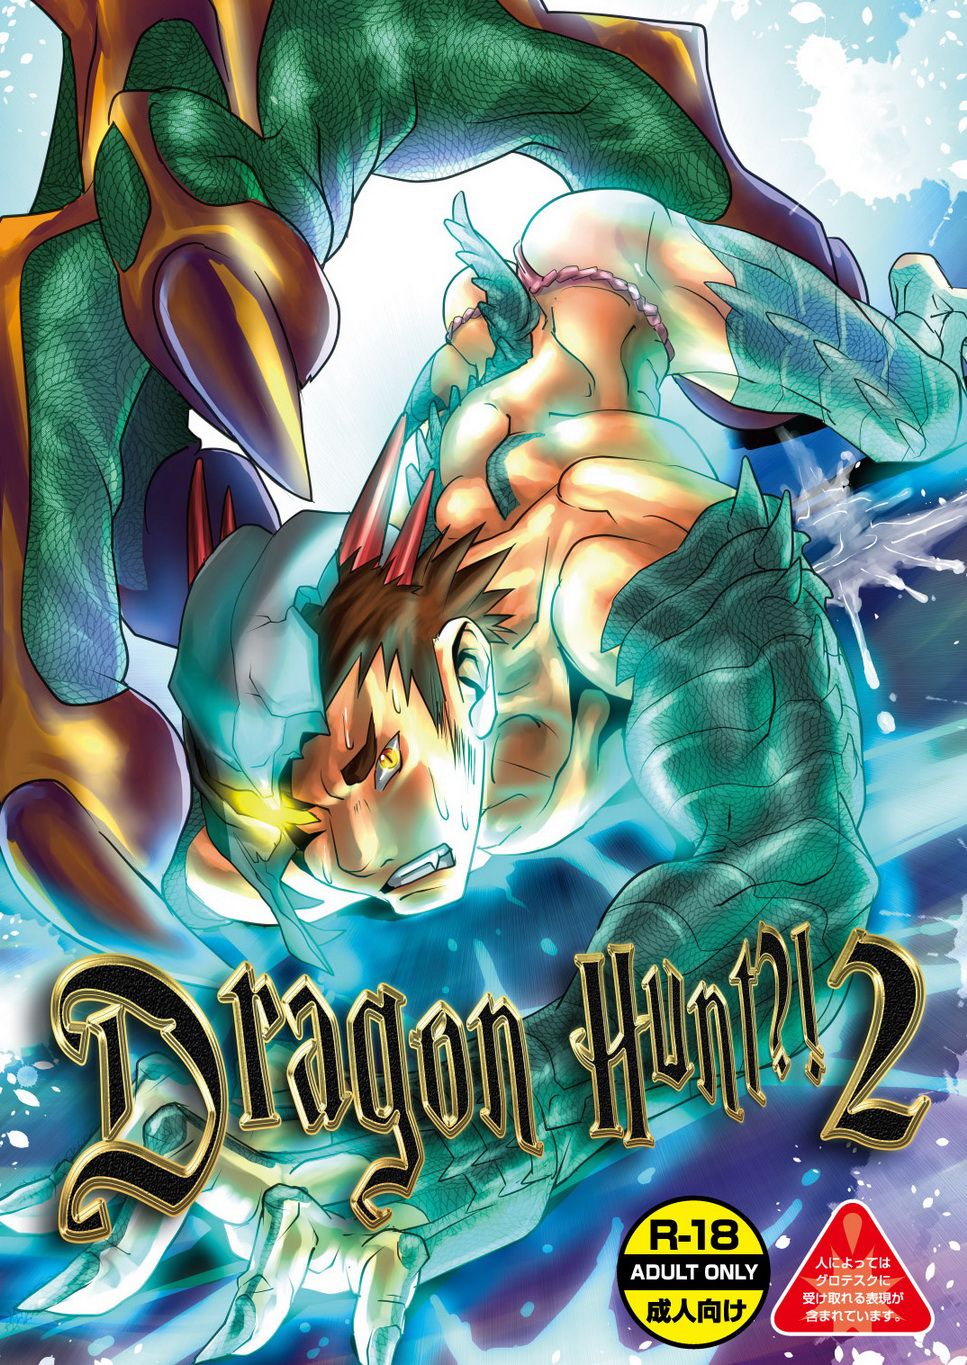 Ayukisa アユキサ Atamanurui MIX-eR アタマヌルイMIX-eR Dragon Hunt?! 2